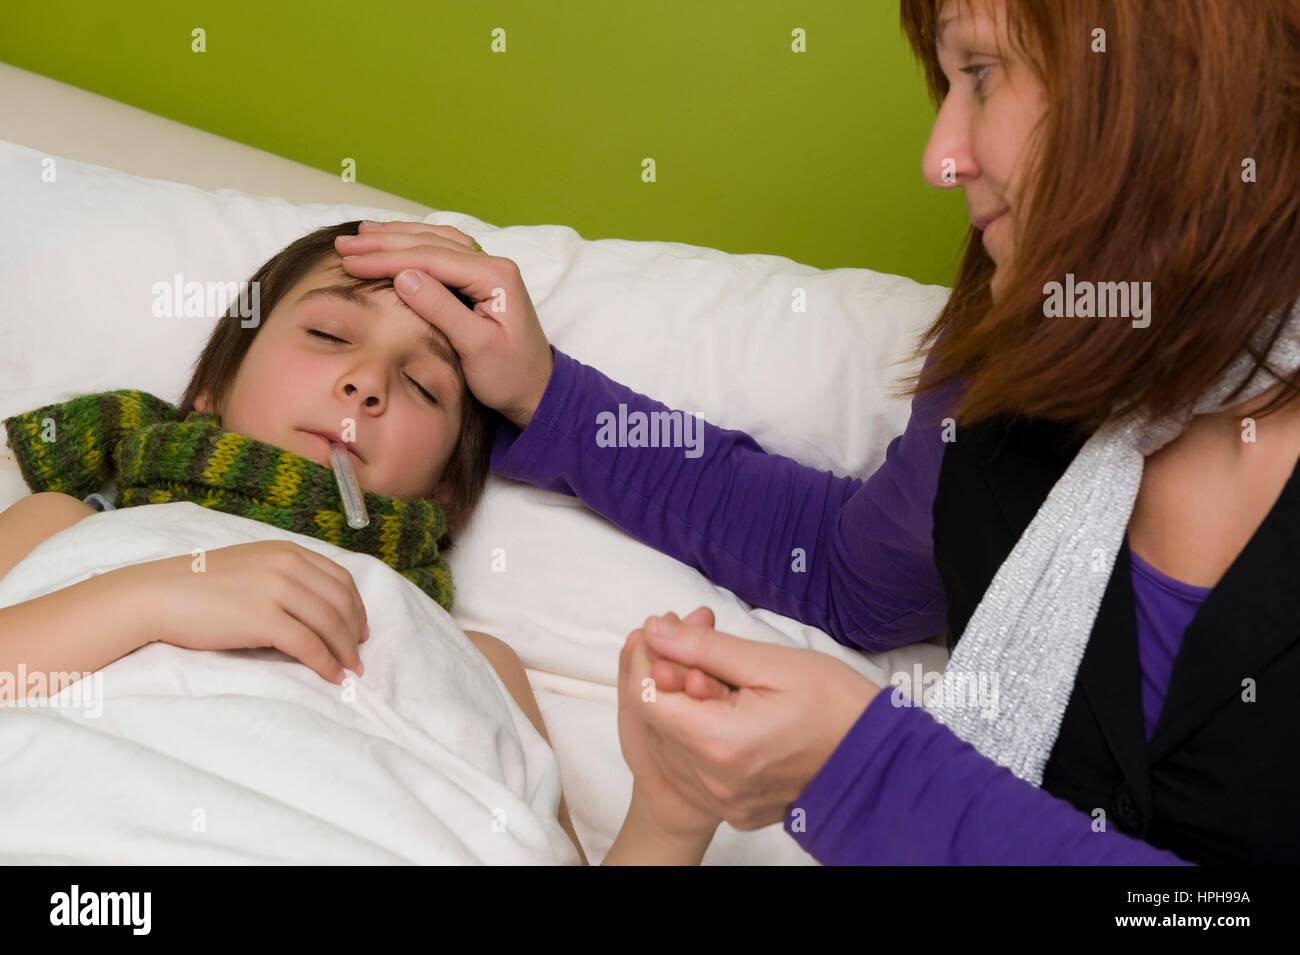 Mutter sitzt am Bett von krankem Sohn - sick son in bed, Model released Stock Photo